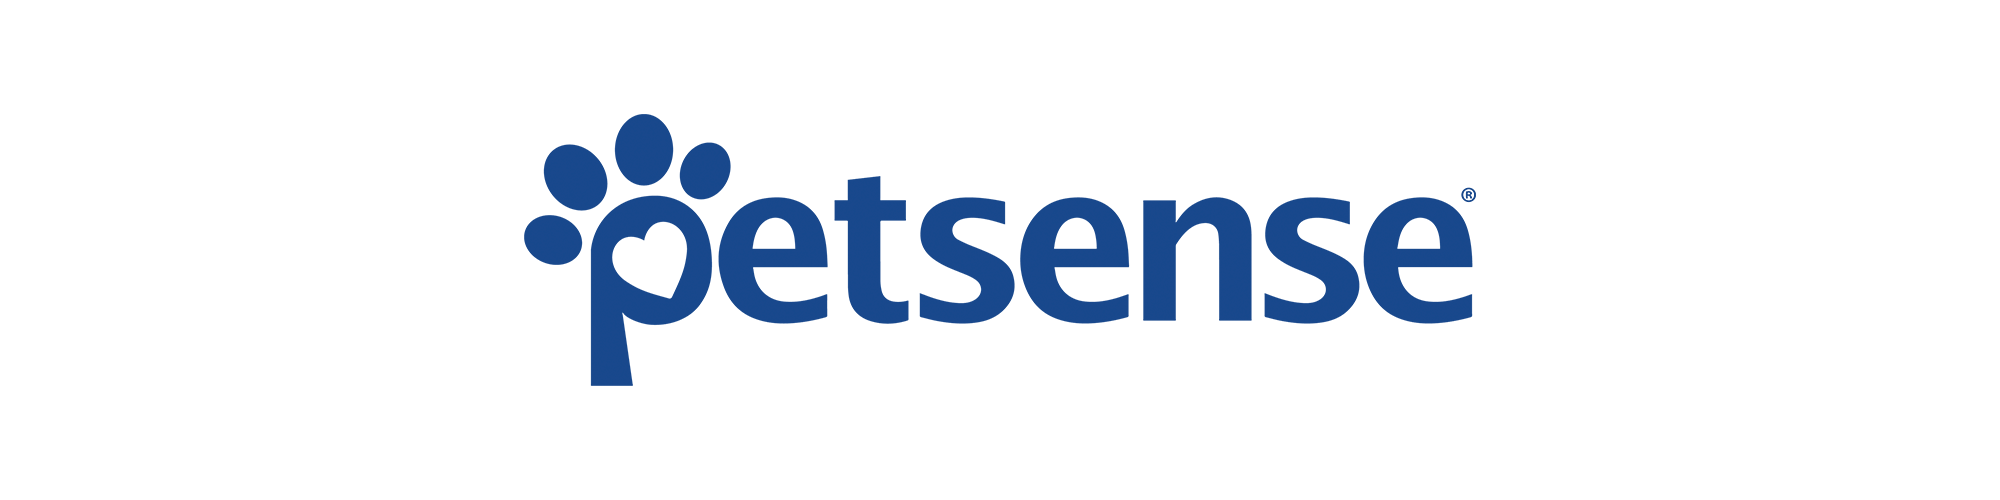 Petsense logo.